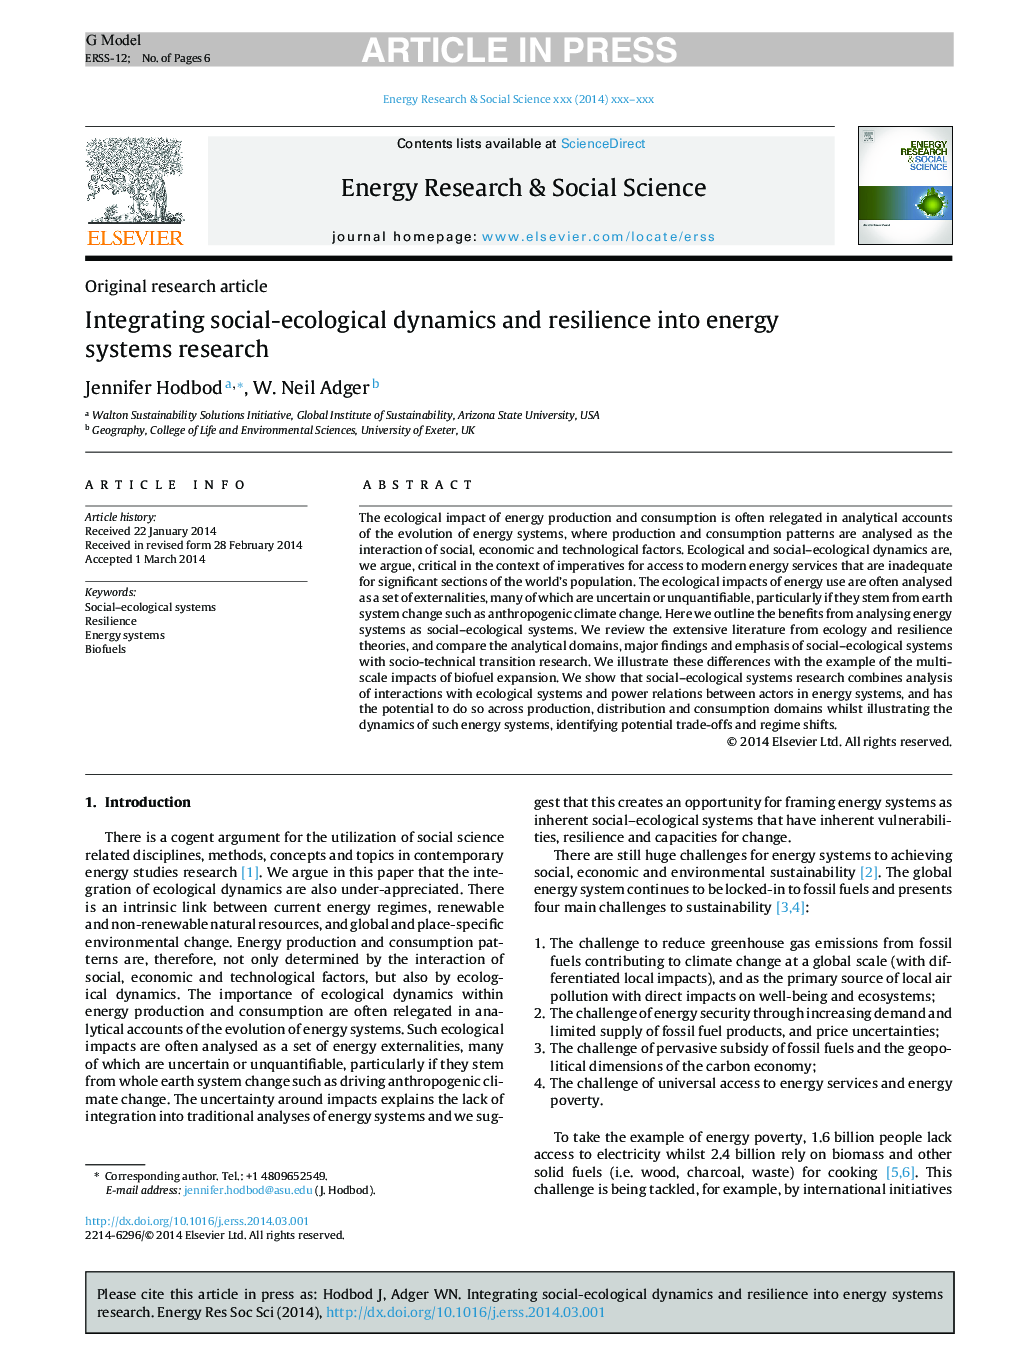 ادغام دینامیک اجتماعی-محیطی و انعطاف پذیری در تحقیقات سیستم های انرژی 